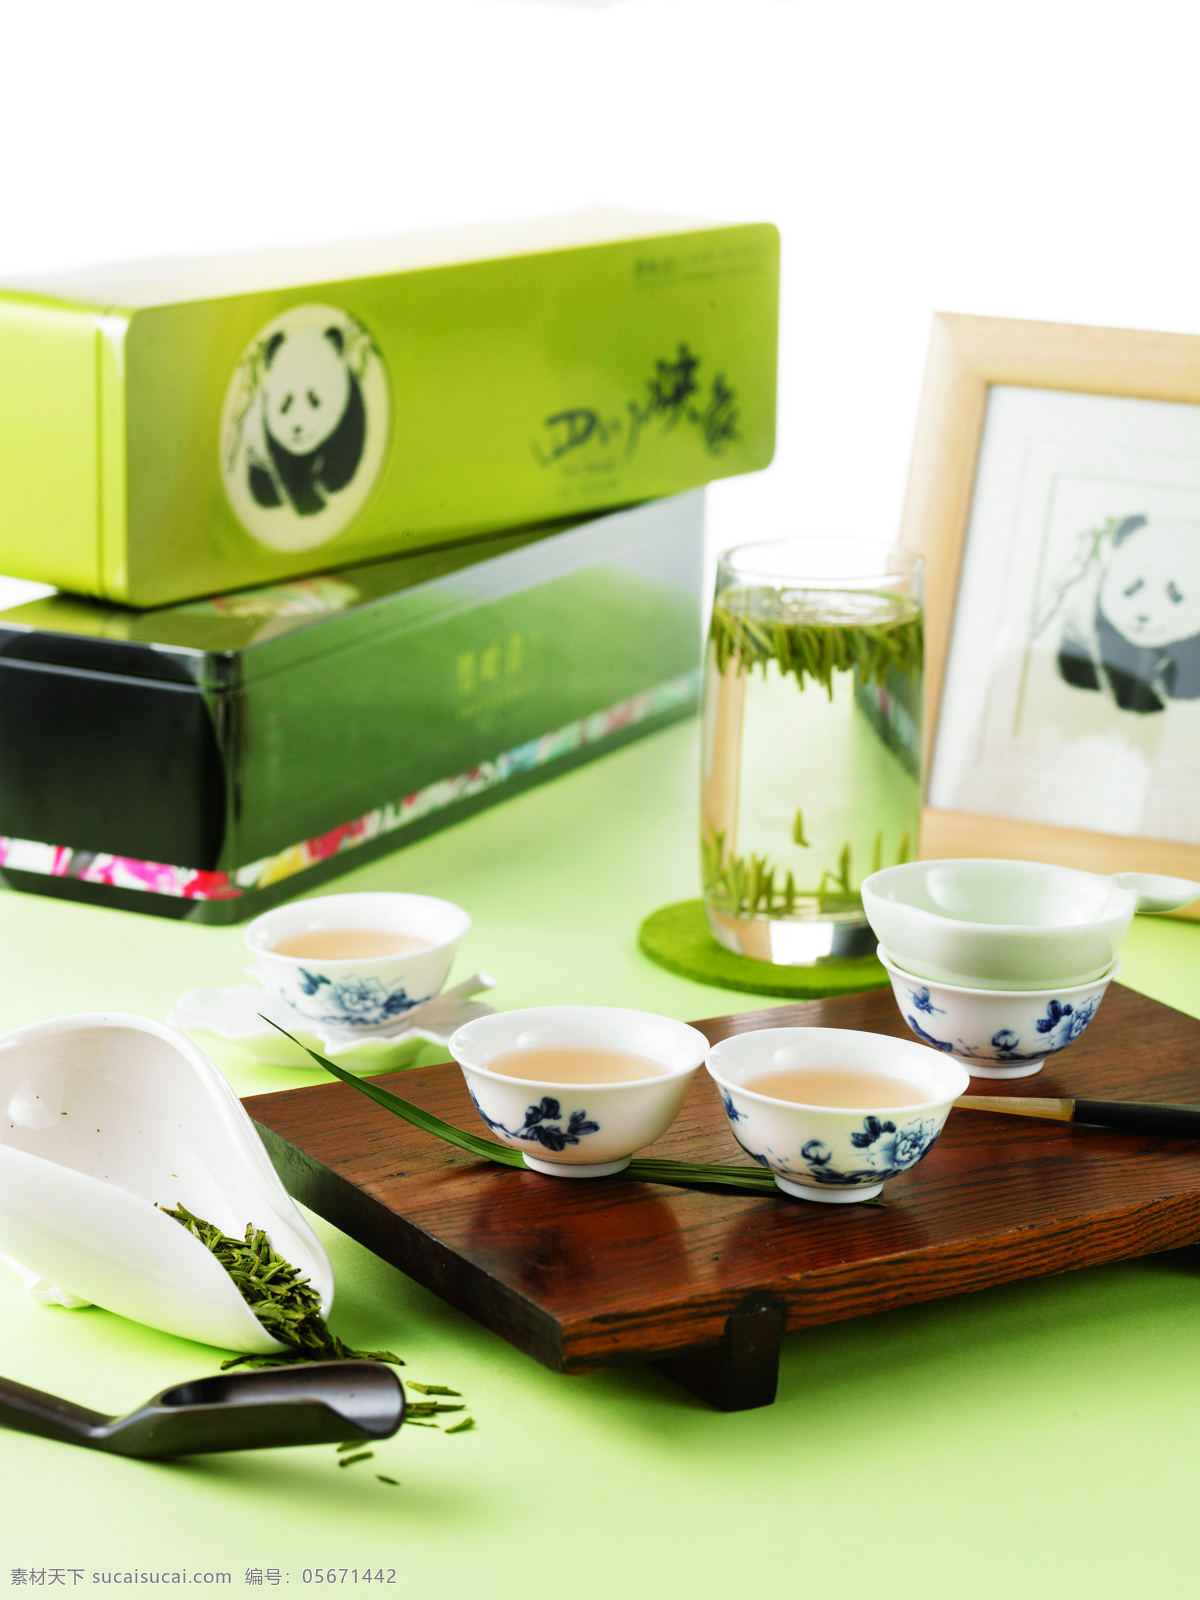 品茶 竹叶青 茶具 熊猫 传统文化 文化艺术